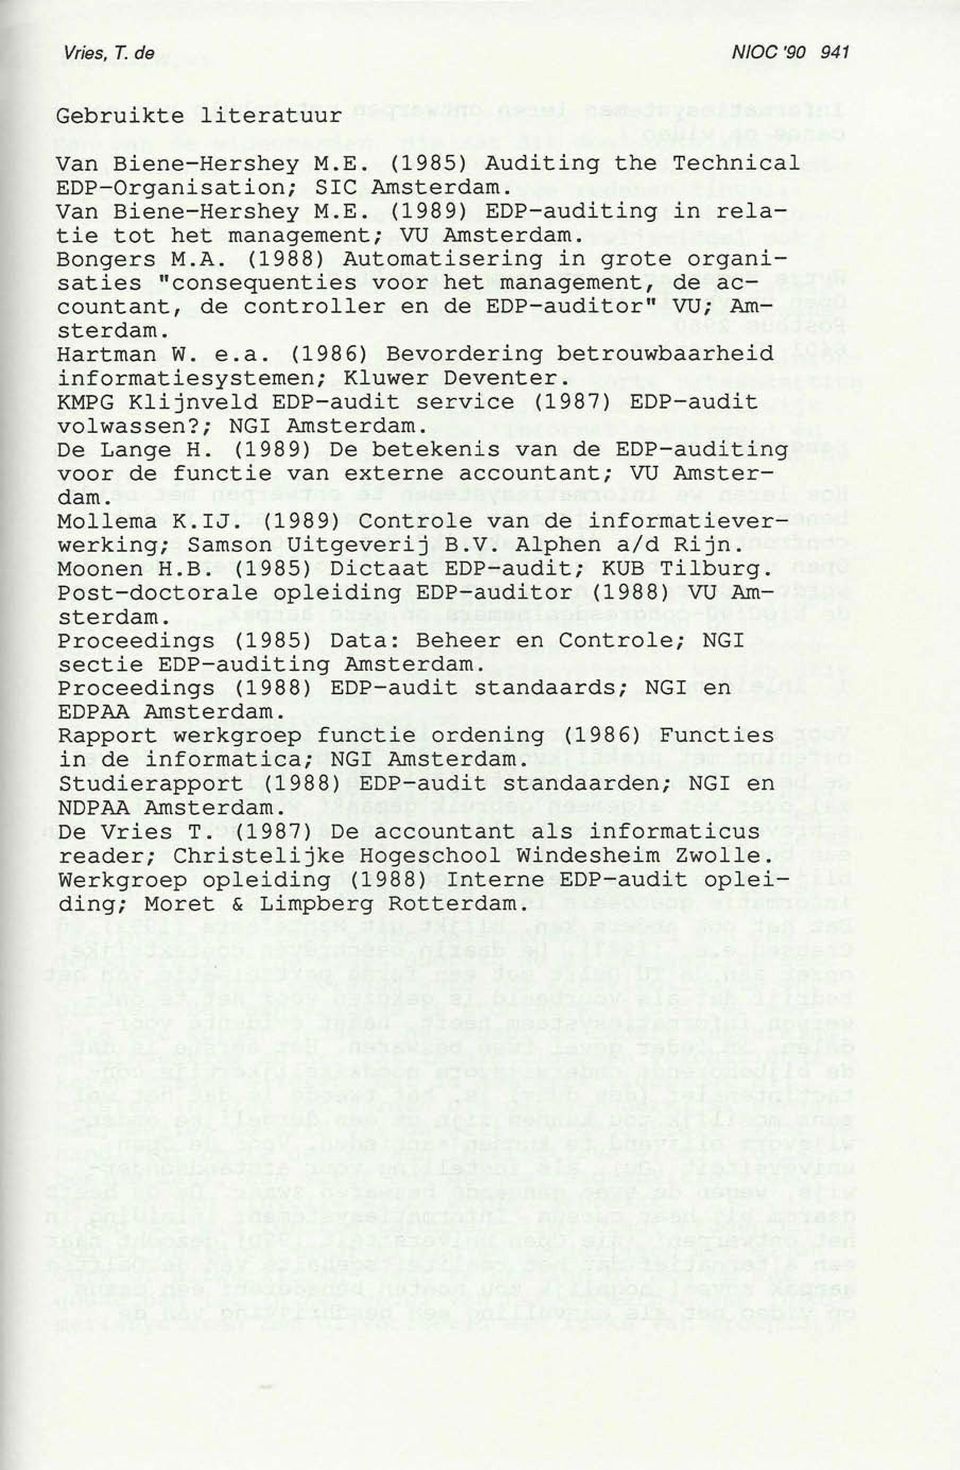 KMPG Klijnveld EDP-audit service (1987) EDP-audit volwassen?; NGI Amsterdam. De Lange H. (1989) De betekenis van de EDP-auditing voor de functie van externe accountant; VU Amsterdam. Mollema K.IJ.